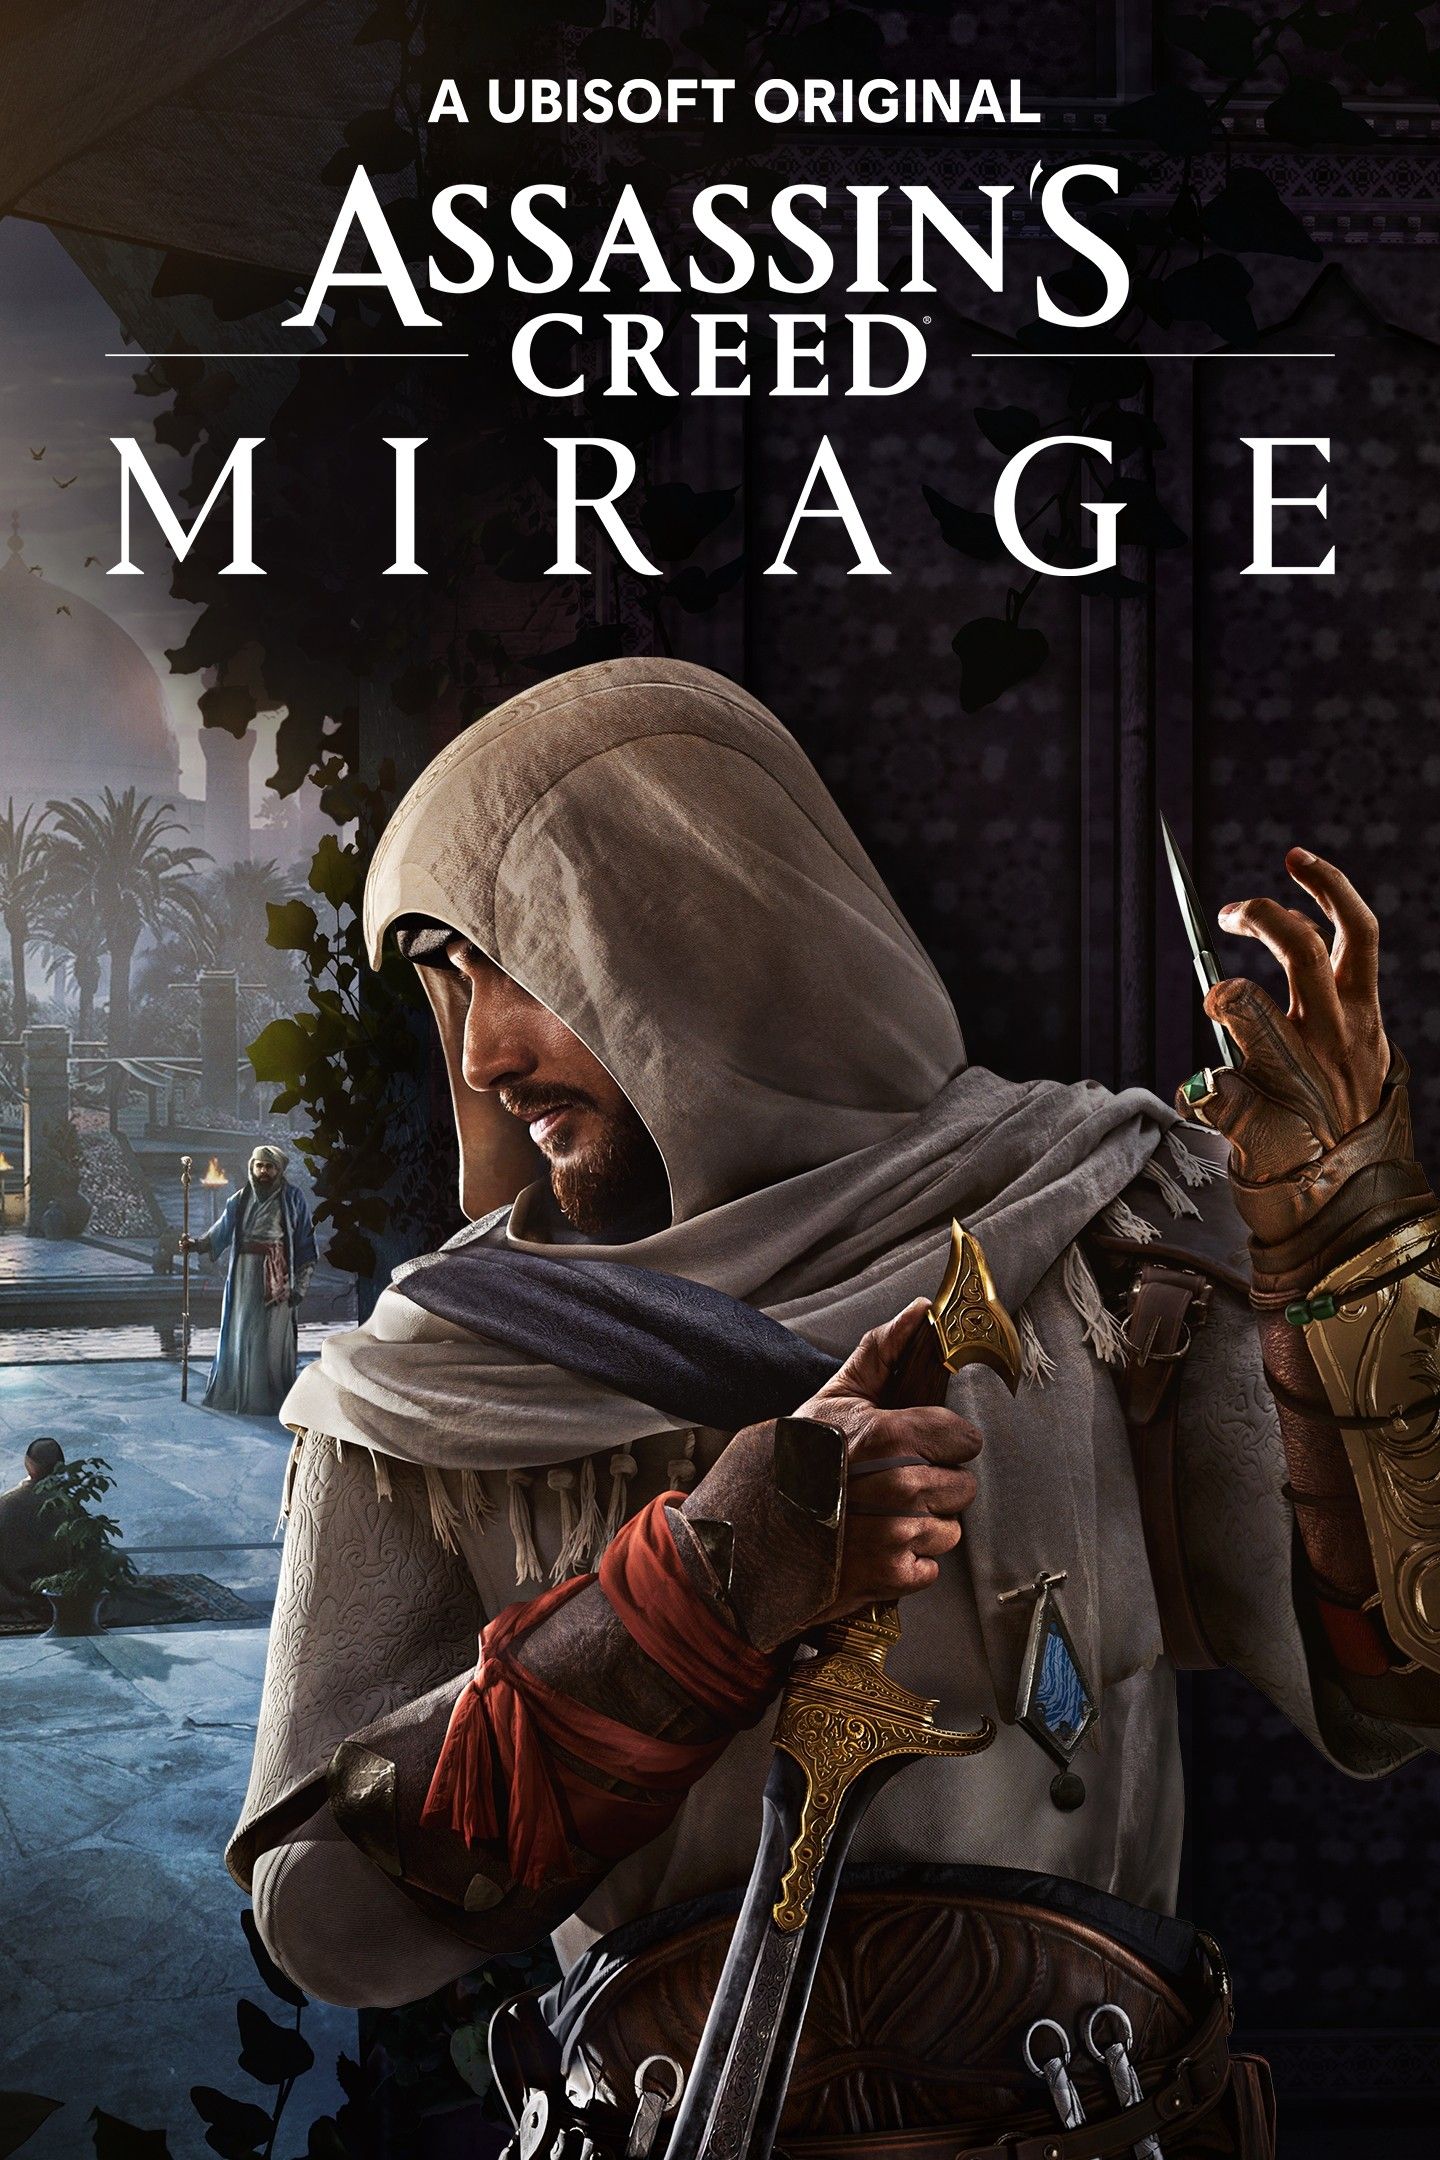 Arte chave de Assassins Creed Mirage